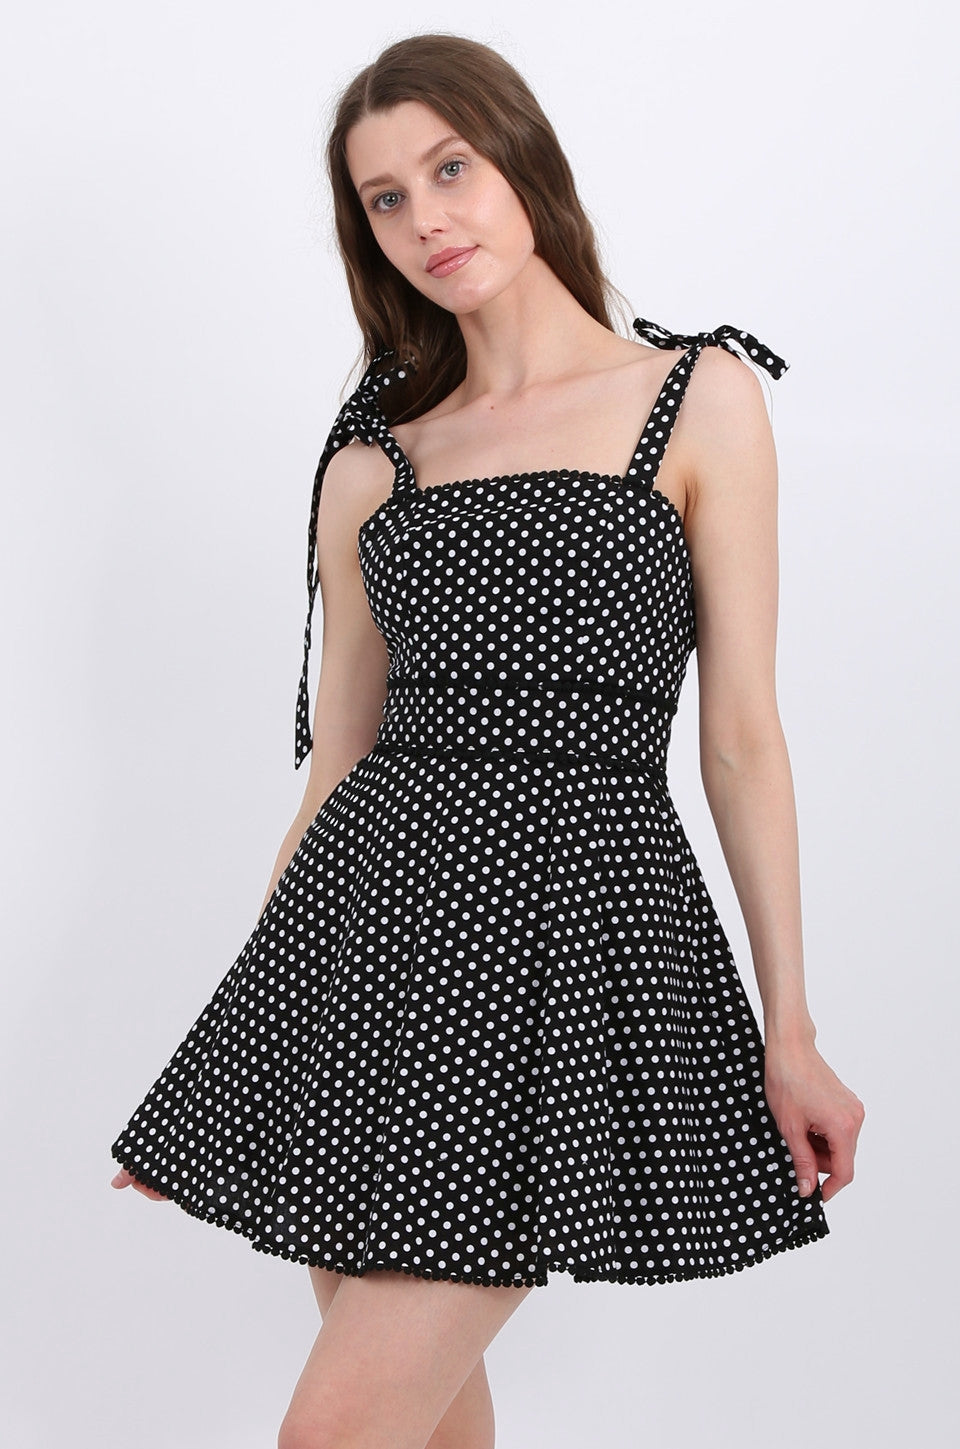 MISS PINKI Alyssa Polka Dots Dress In Black